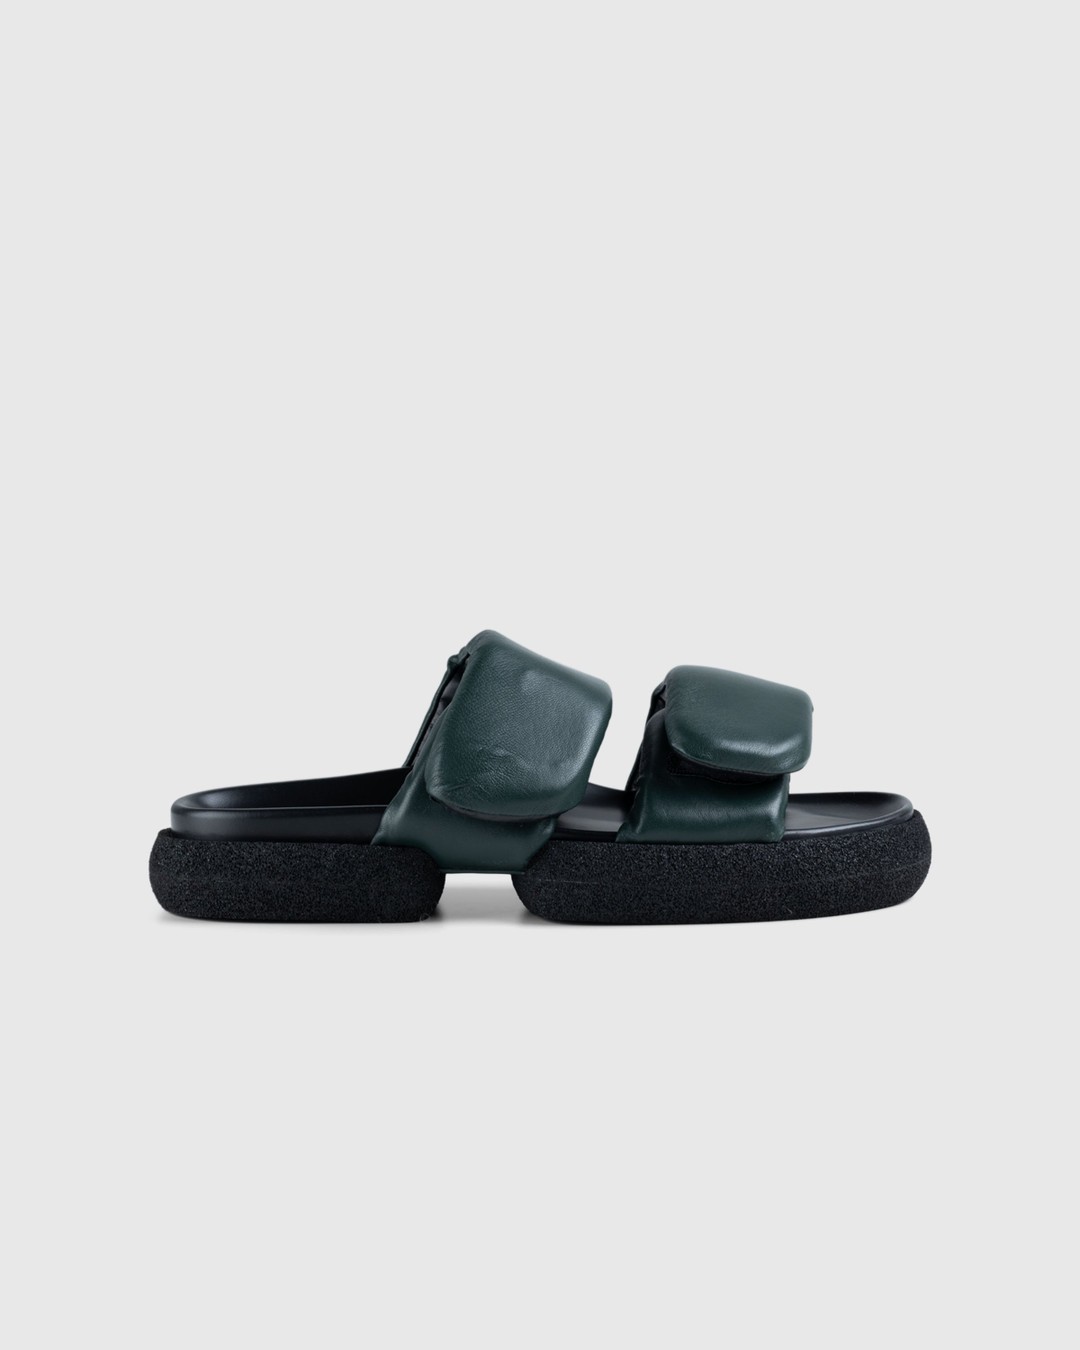 Dries van Noten – Leather Platform Sandals Green - Sandals - Green - Image 1